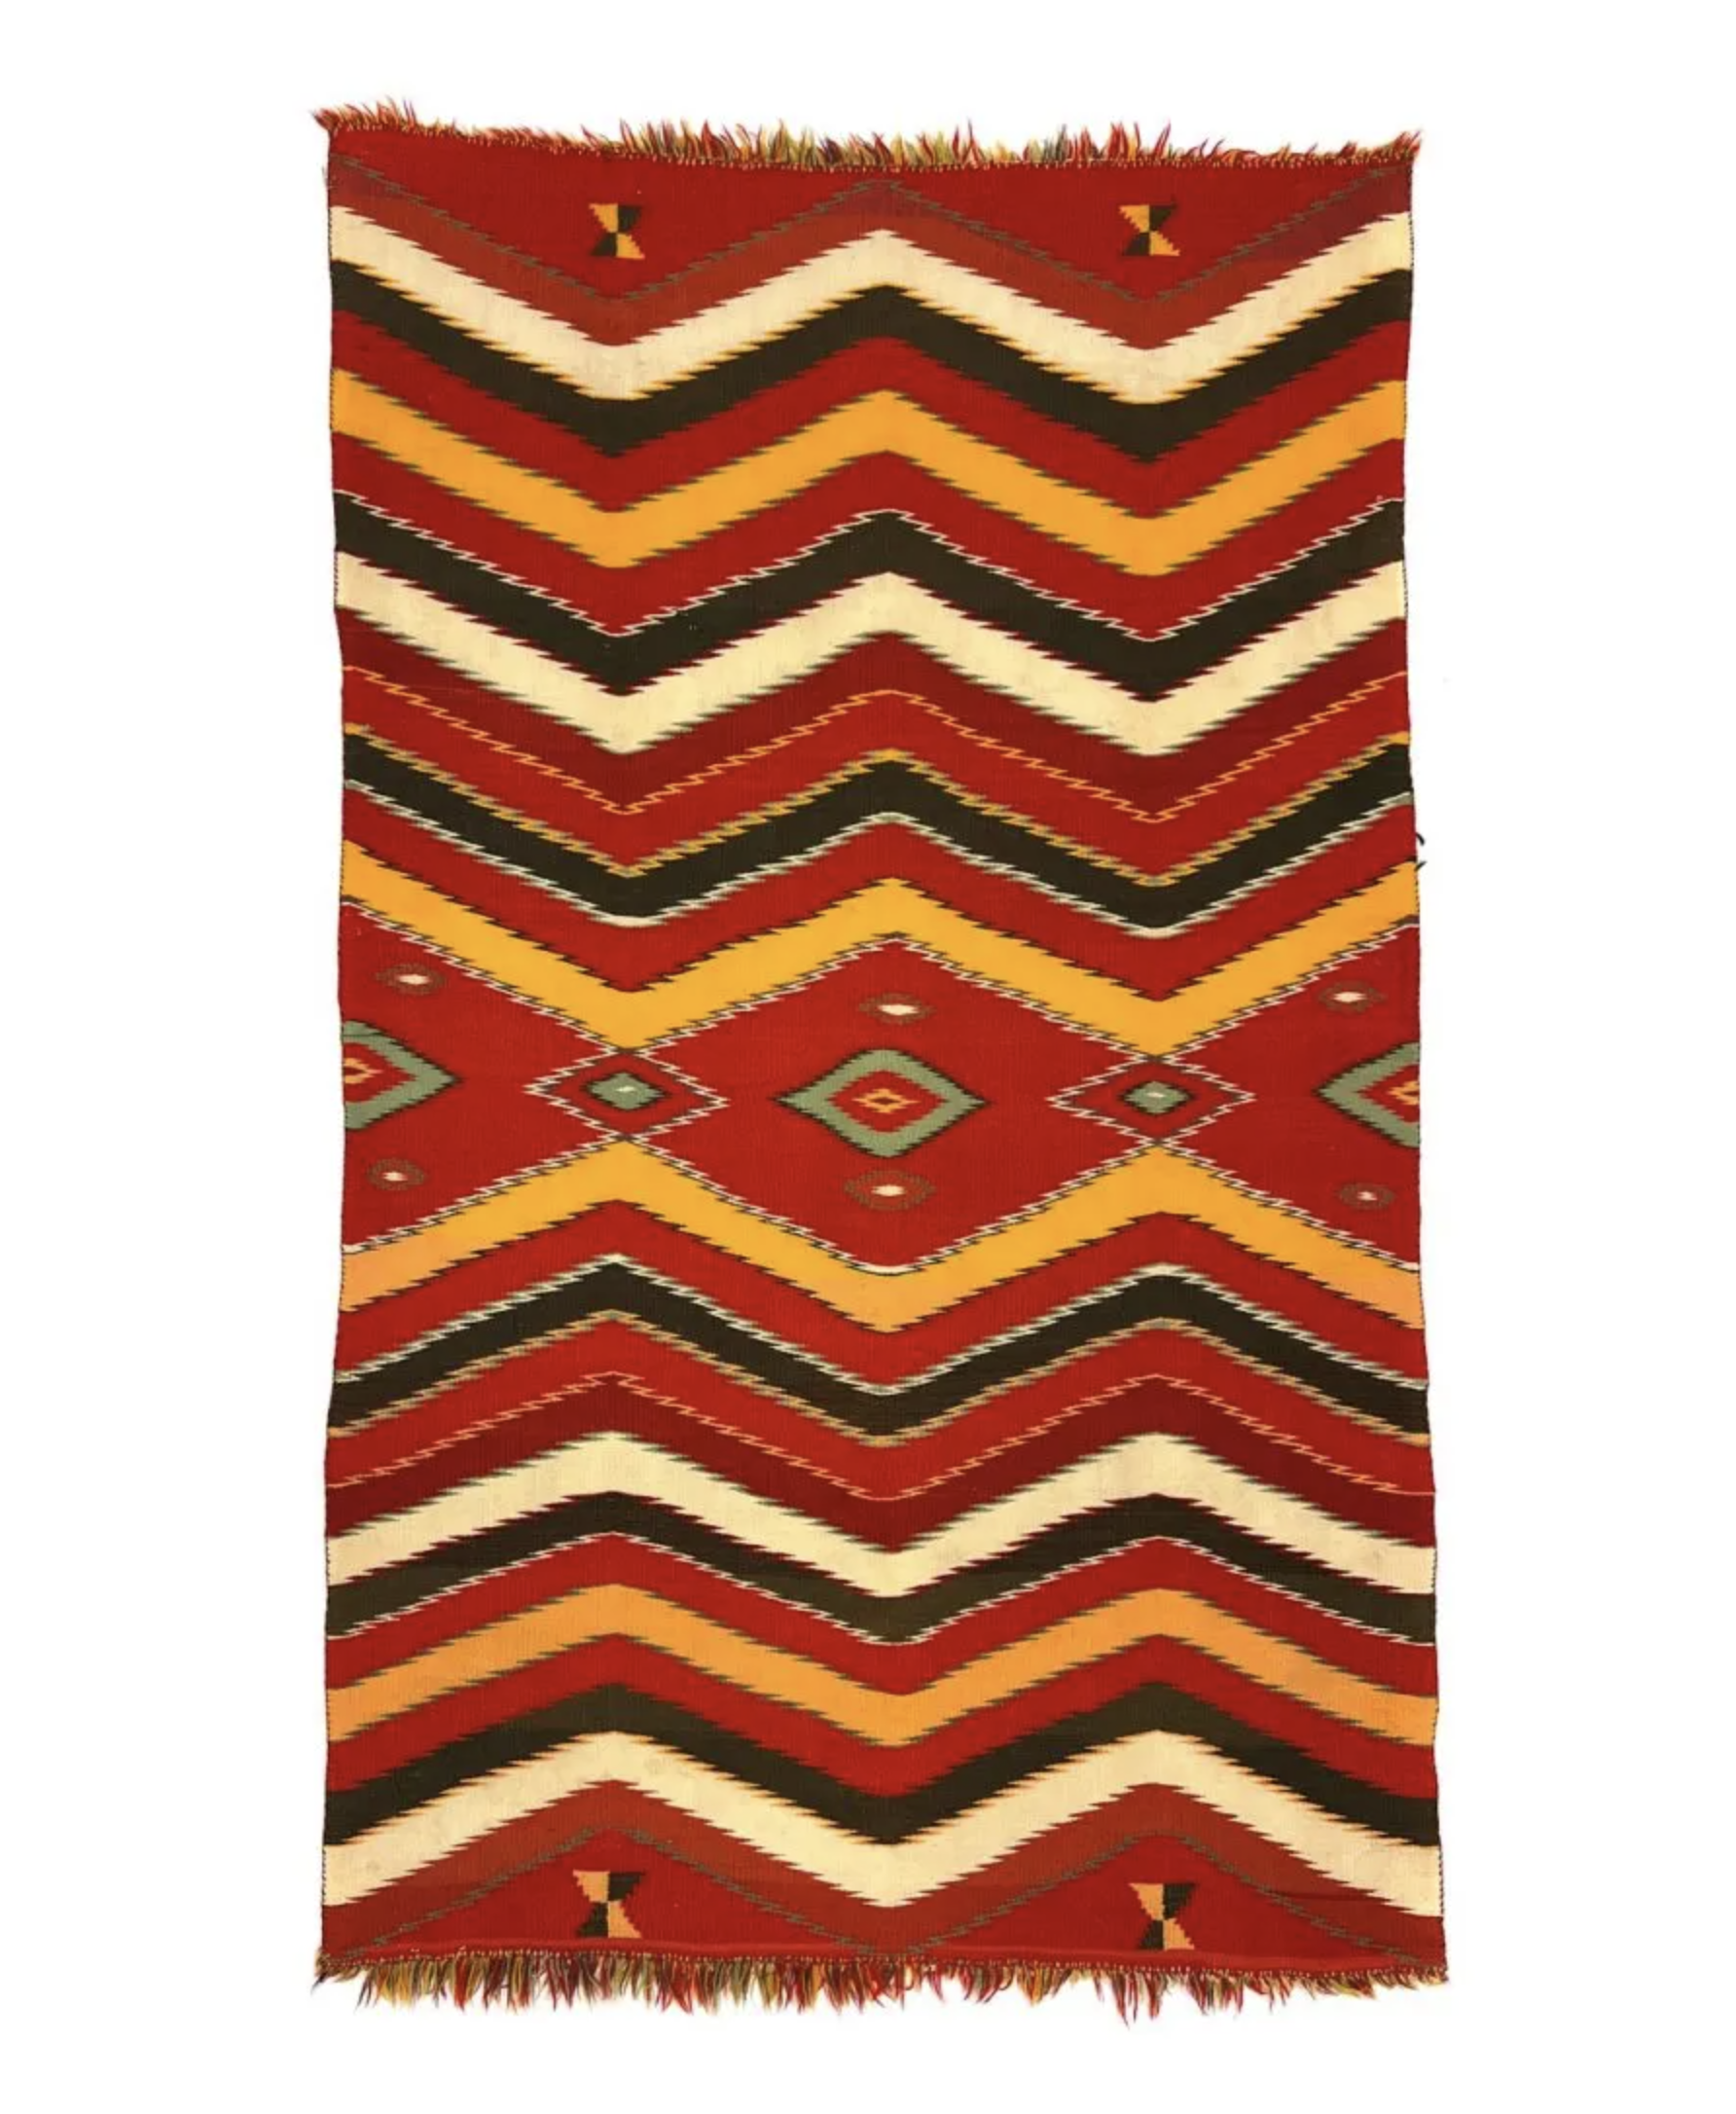 Navajo Germantown Eyedazzler Blanket c. 1890s